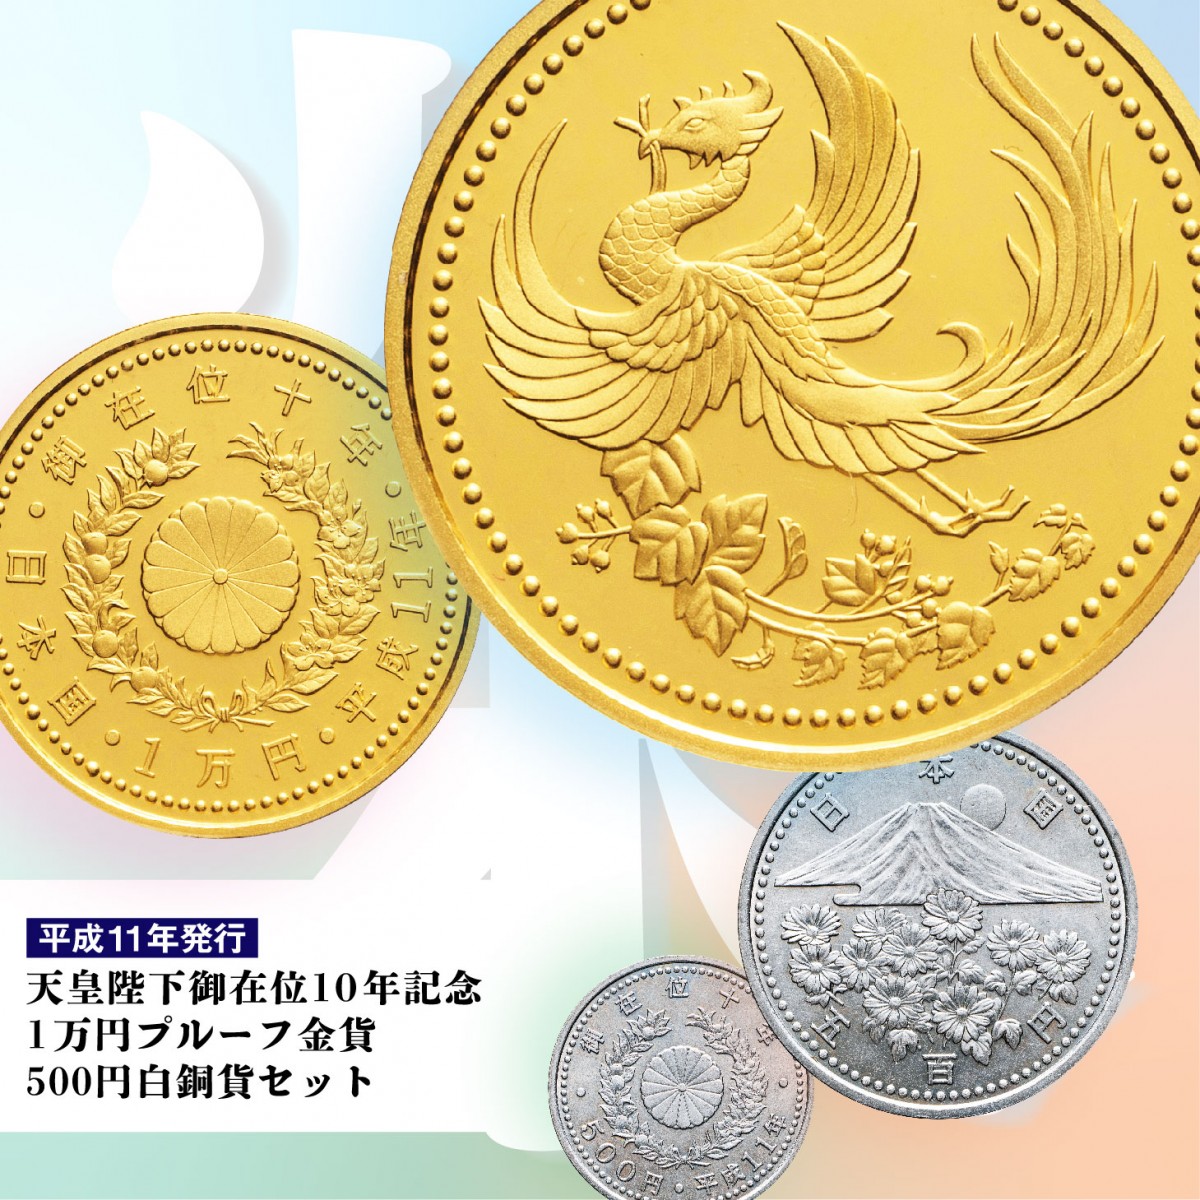 天皇陛下御在位十年記念 1万円金貨 プルーフ貨幣セット - コレクション